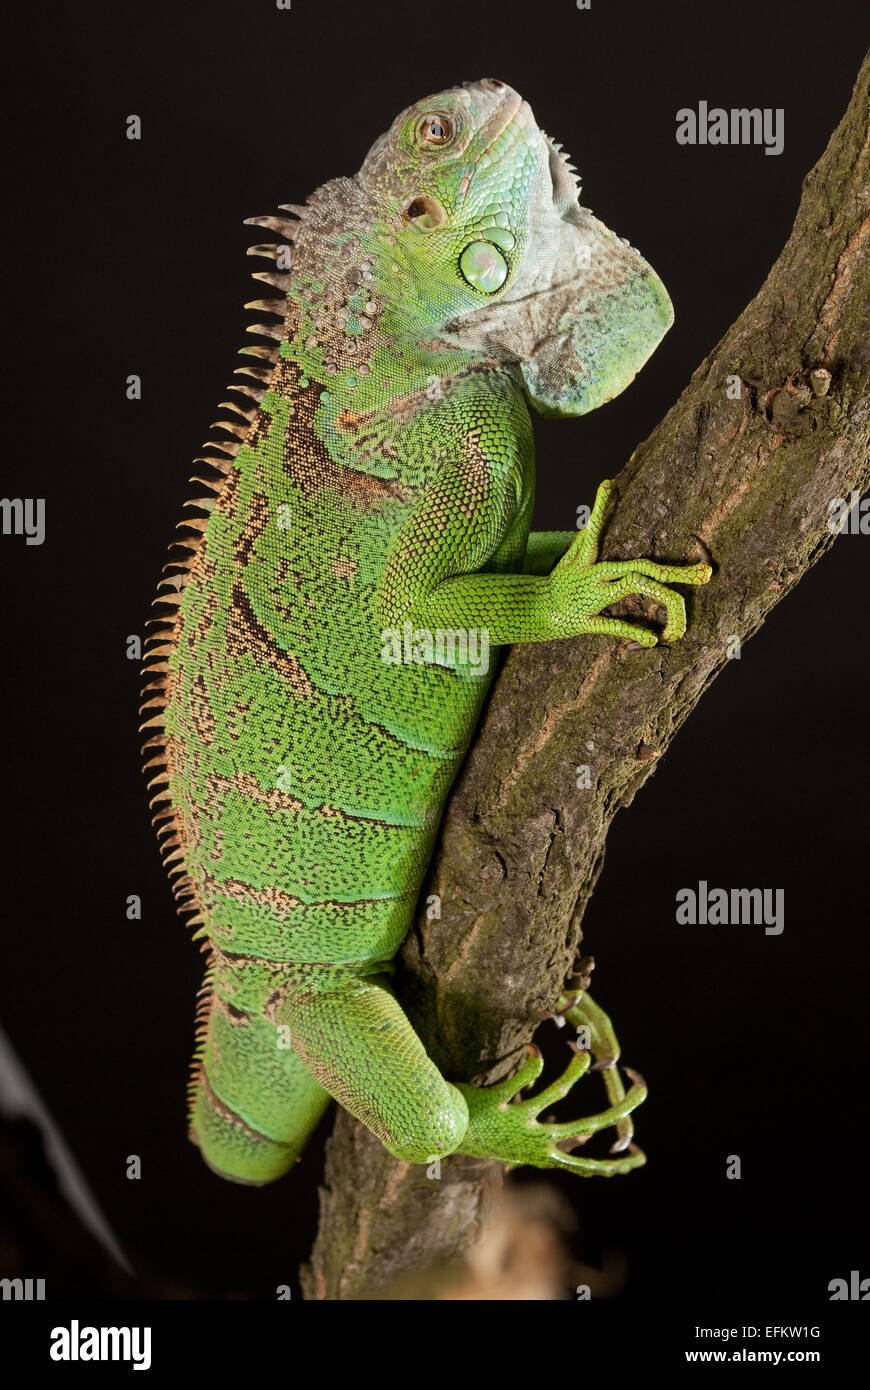 iguana closeup, on black background Stock Photo